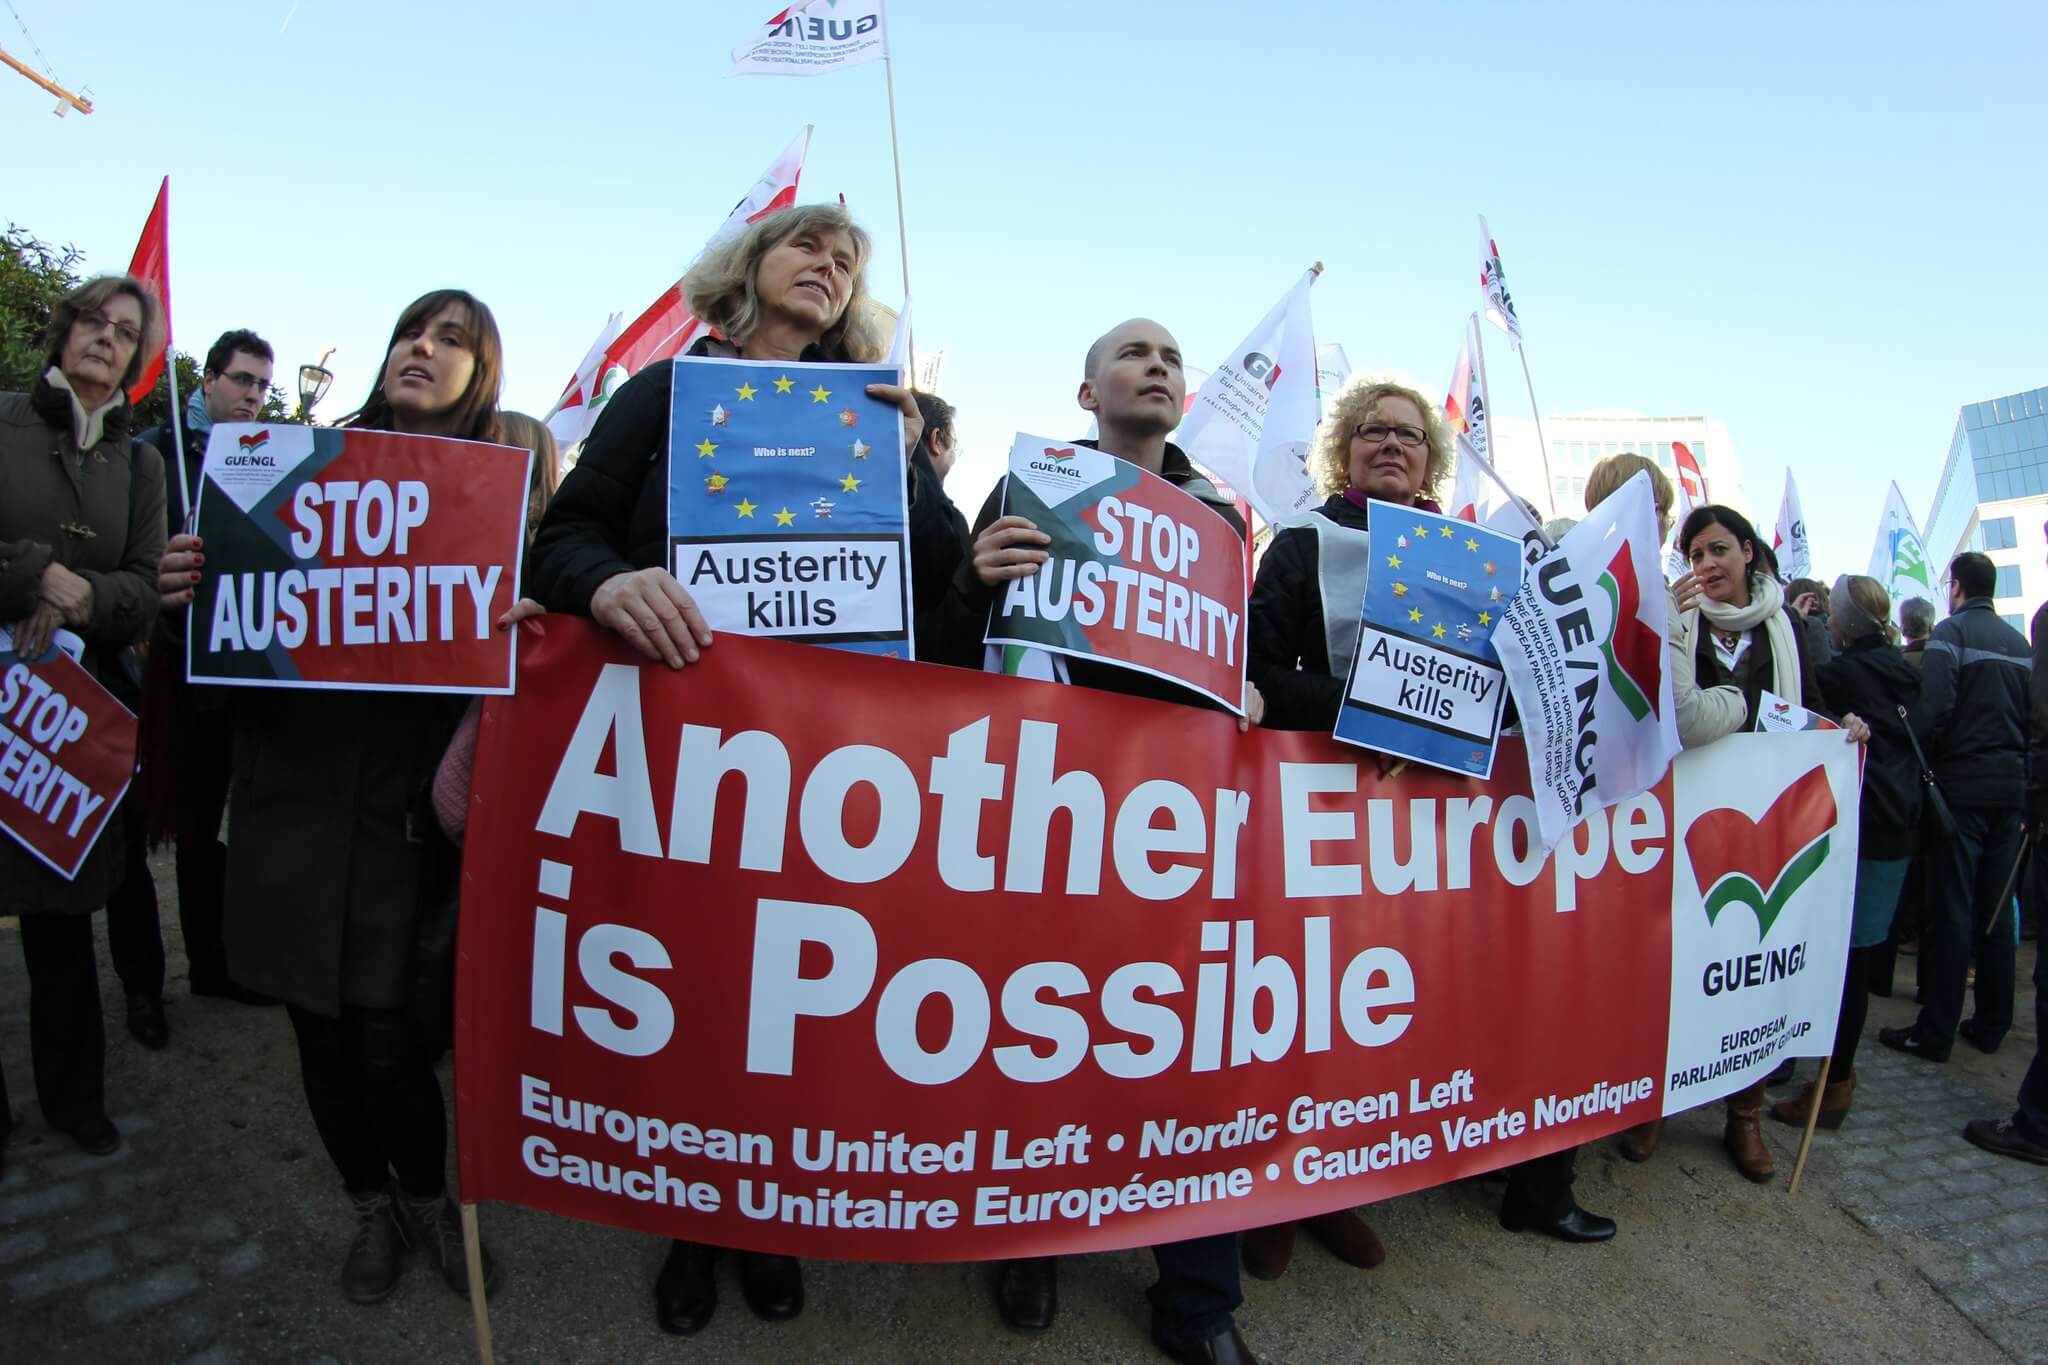 Protest van GUE/NGL voor een ander Europa, in Brussel 2012. ©Flickr/GUE/NGL